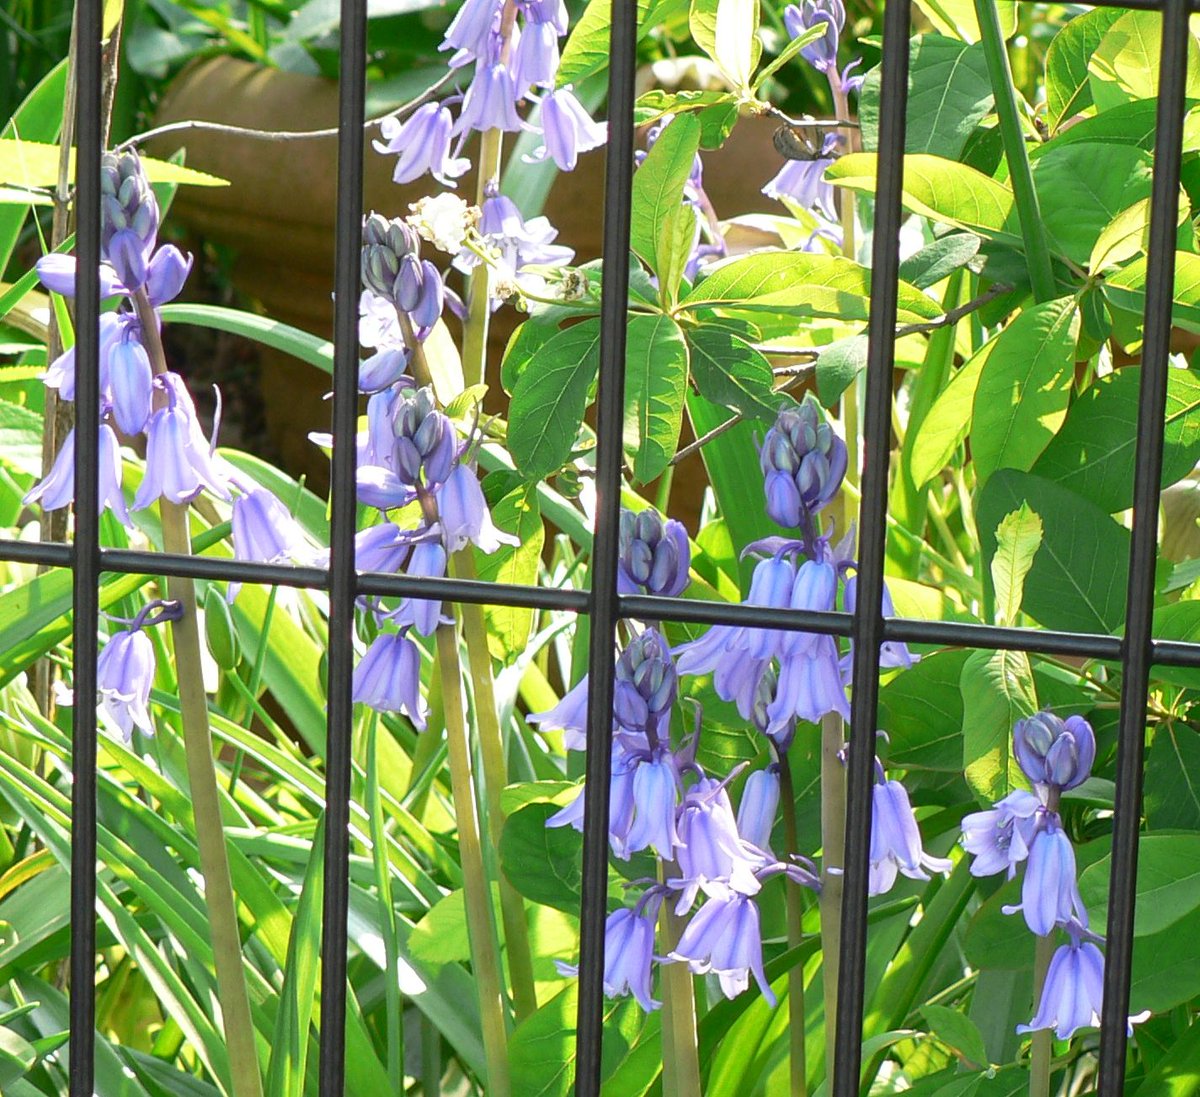 ট ইট র こころんグリーン 近所のお宅の庭に 淡いブルーのスパニッシュ ブルーベルが優雅に咲いていました イベリア半島原産の春咲き球根多年草です 小さな釣鐘をたくさん吊り下げたような姿です スパニッシュブルーベル ブルー イベリア半島 春咲き